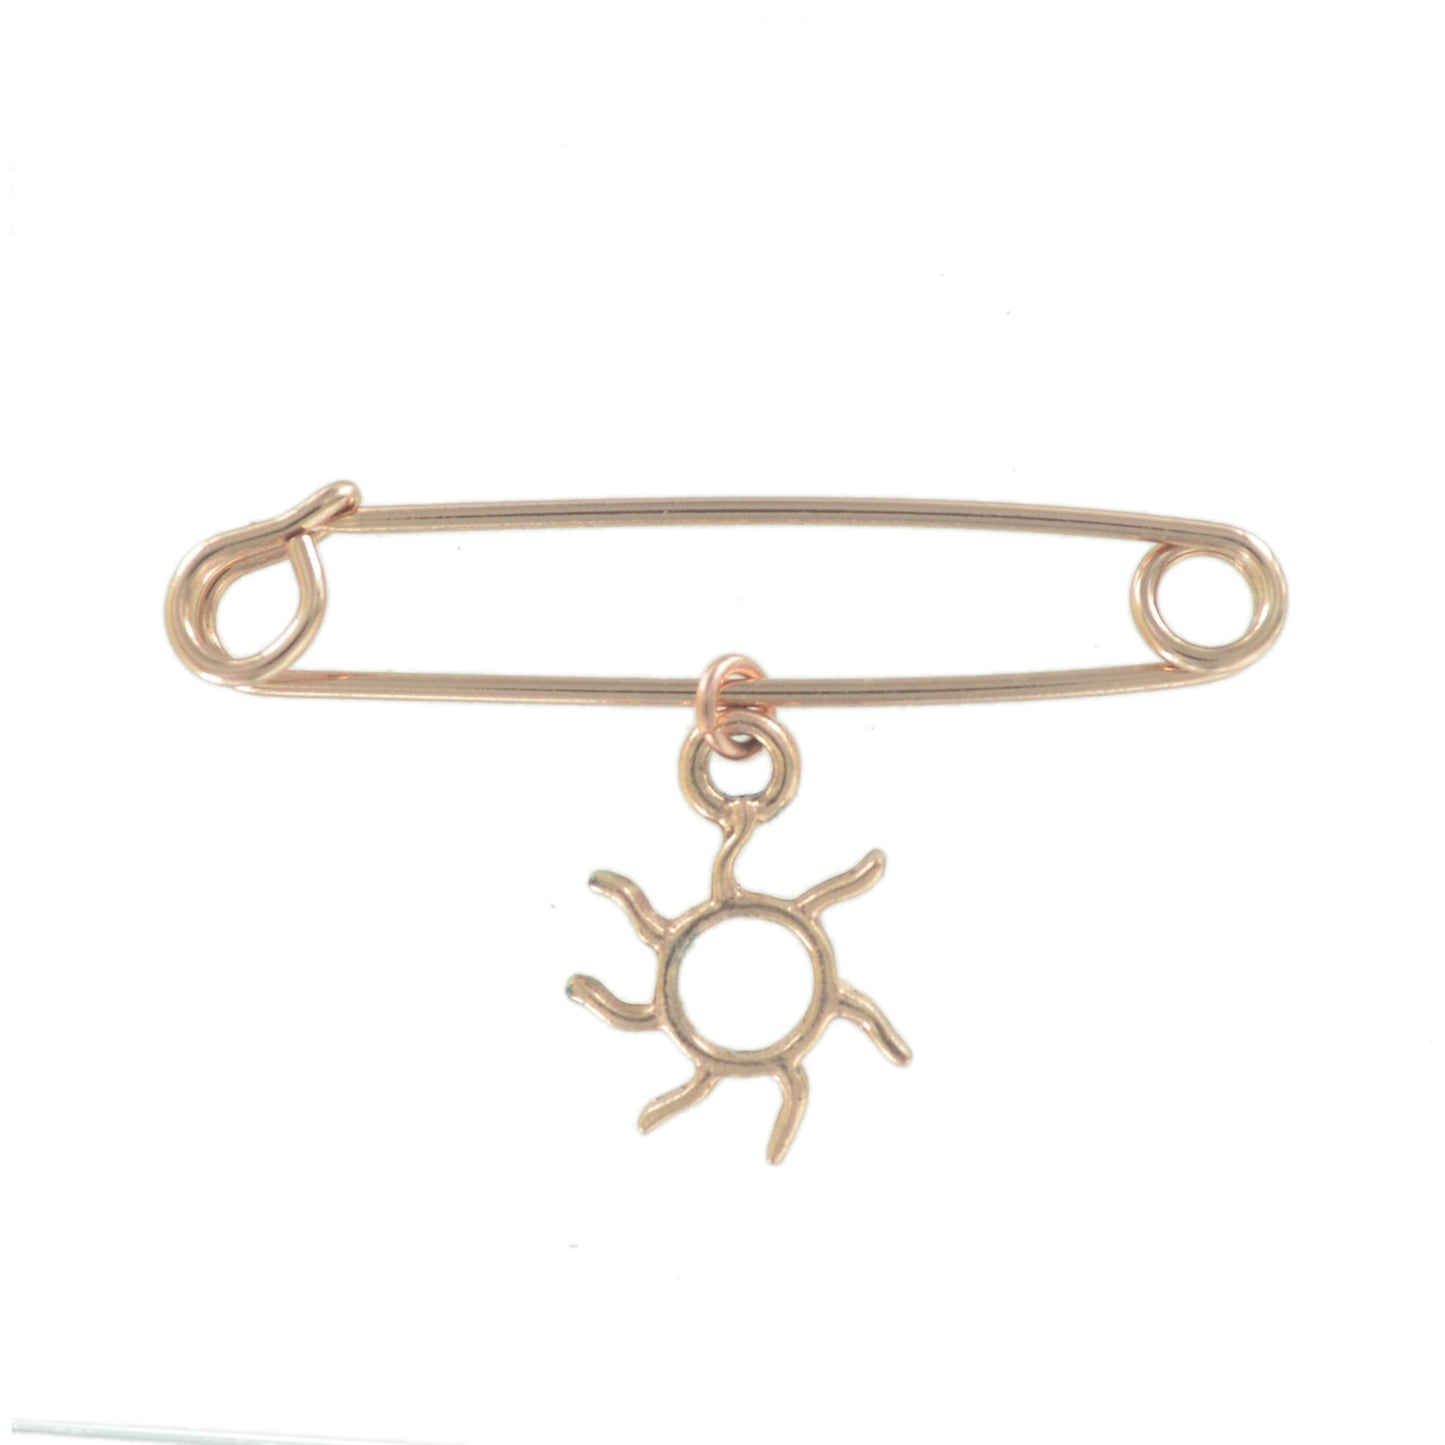 USA Safety Pin Brooch Sunshine Sun Charm Rose Gold Tone Fashion Jewelry 2"